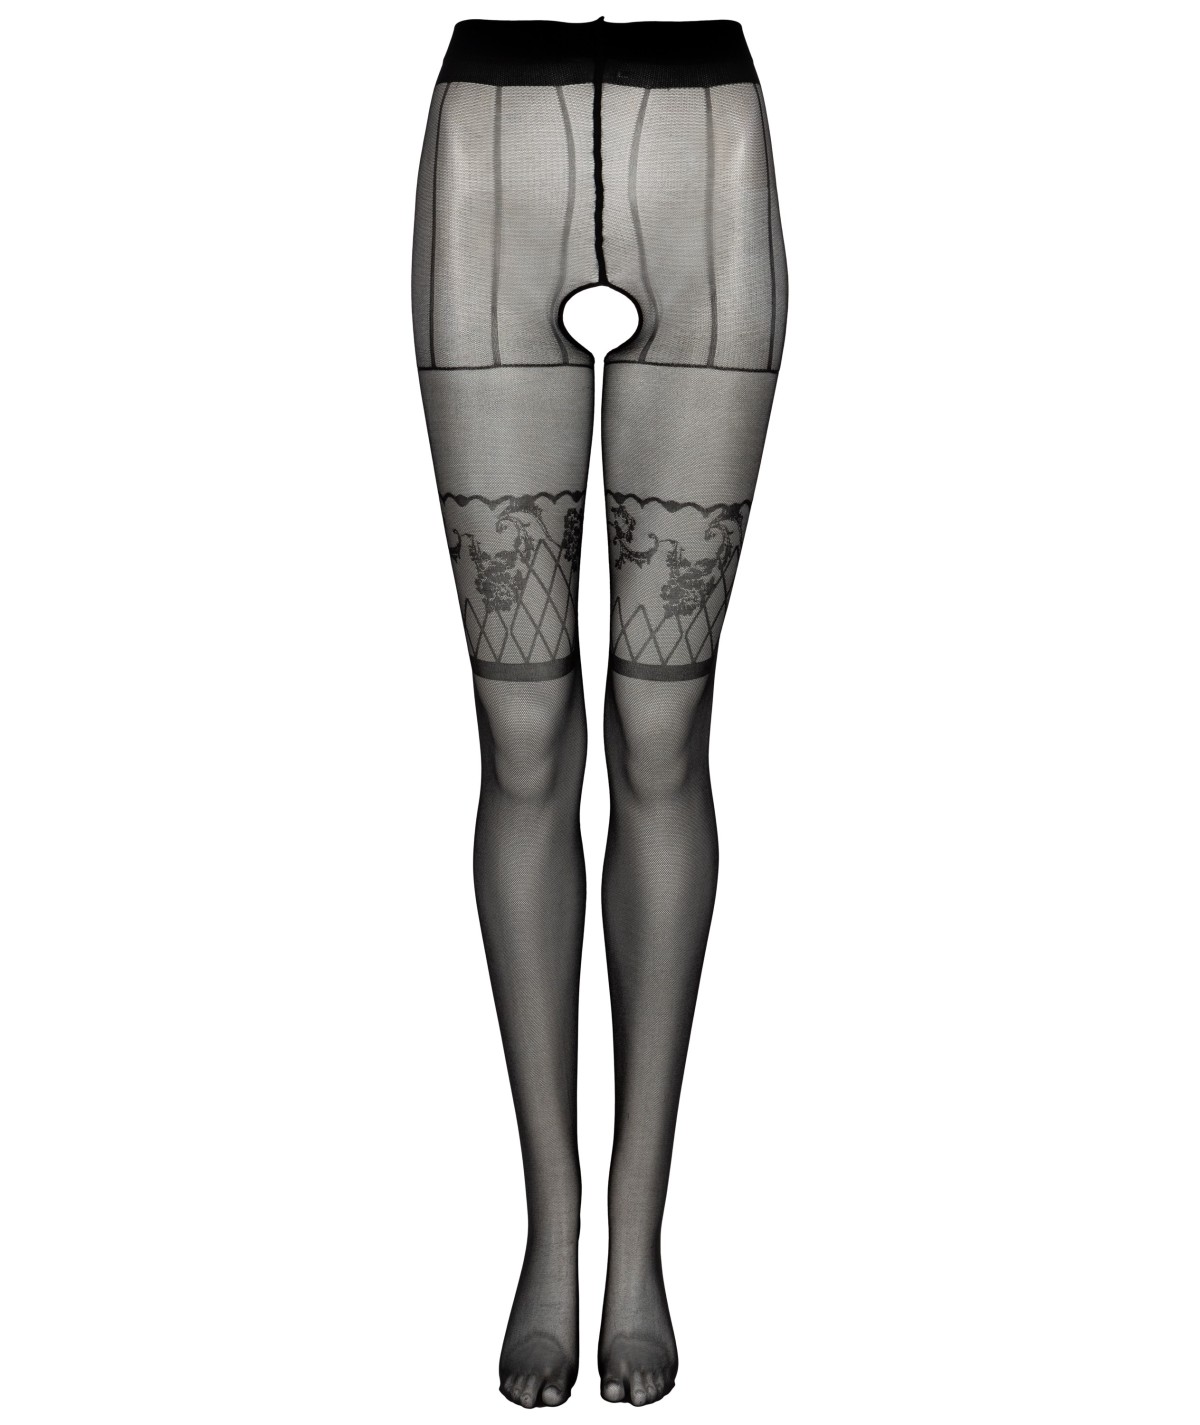 Tights & Leggings Napama 20 DEN Black LivCo Corsetti Fashion